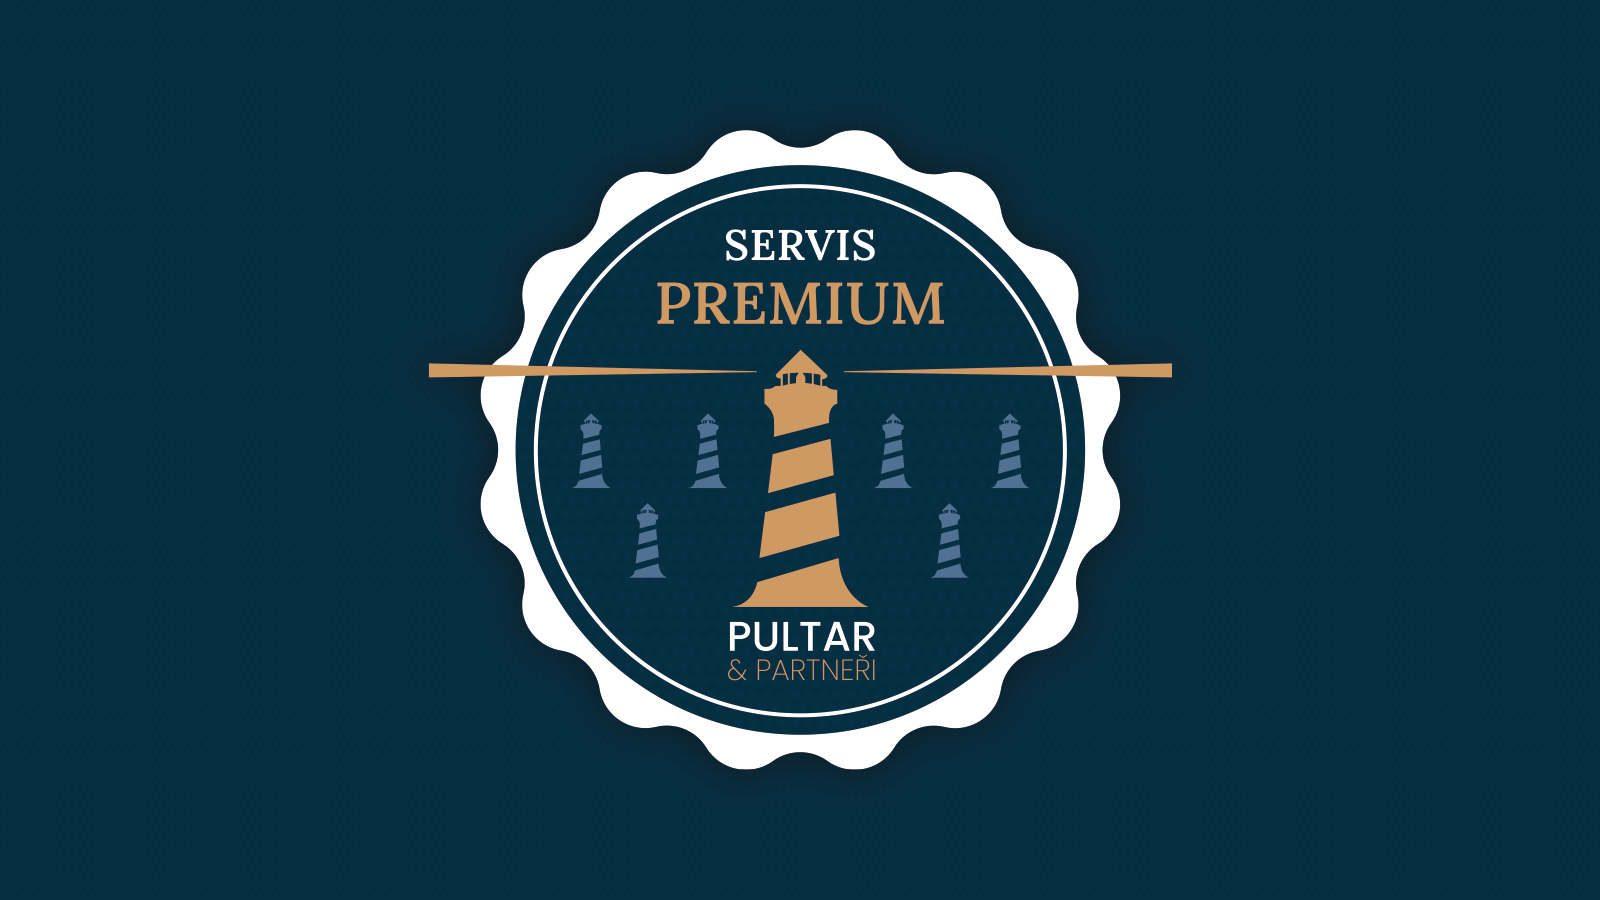 Služba Premium je hlavně pohoda a klid